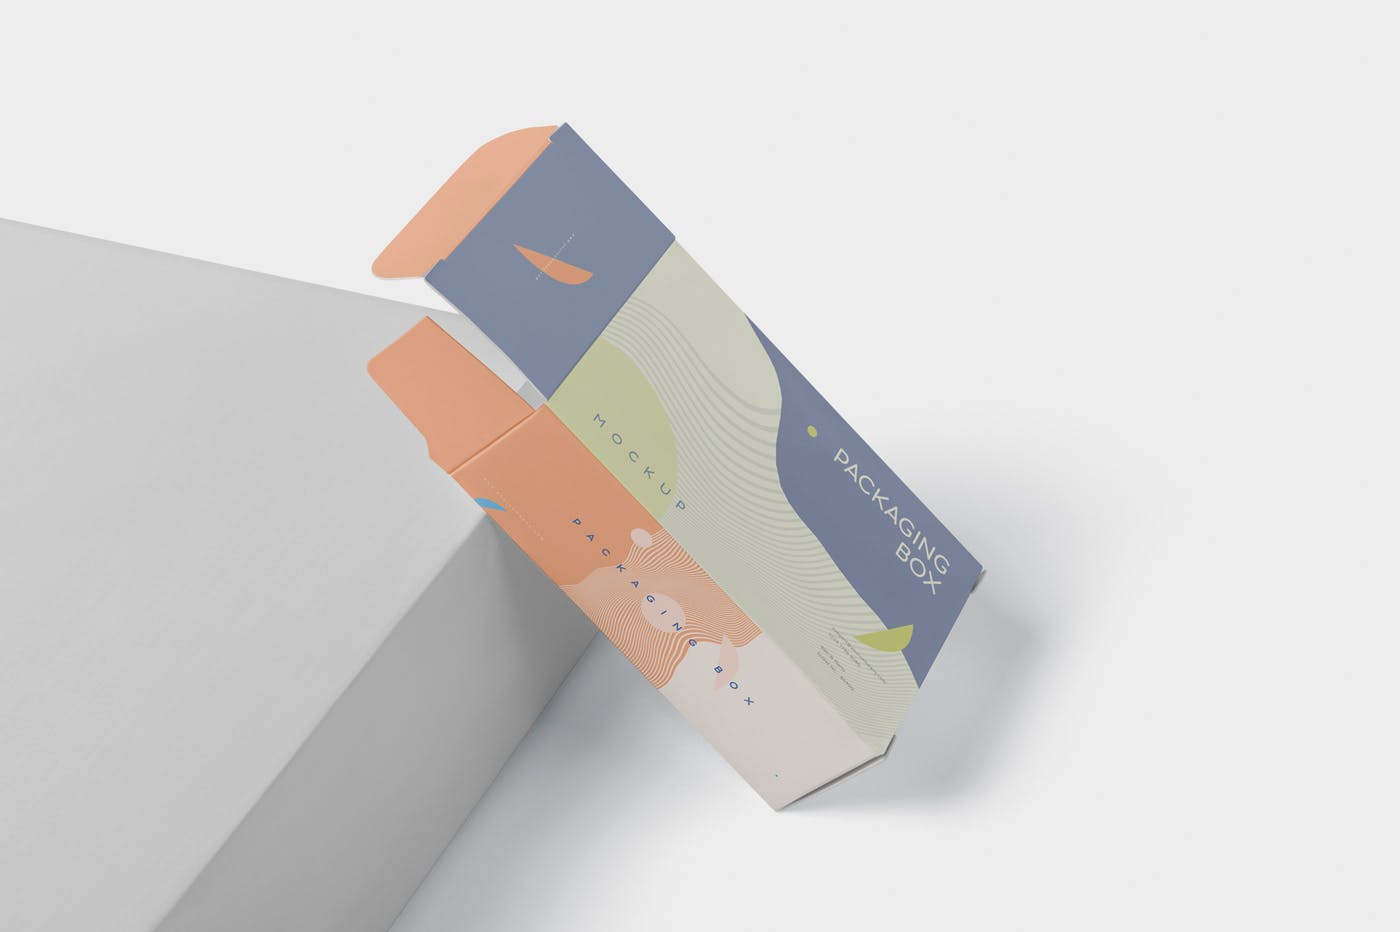 扁平矩形产品包装盒效果图素材中国精选 Package Box Mockup – Slim Rectangle Shape插图(2)